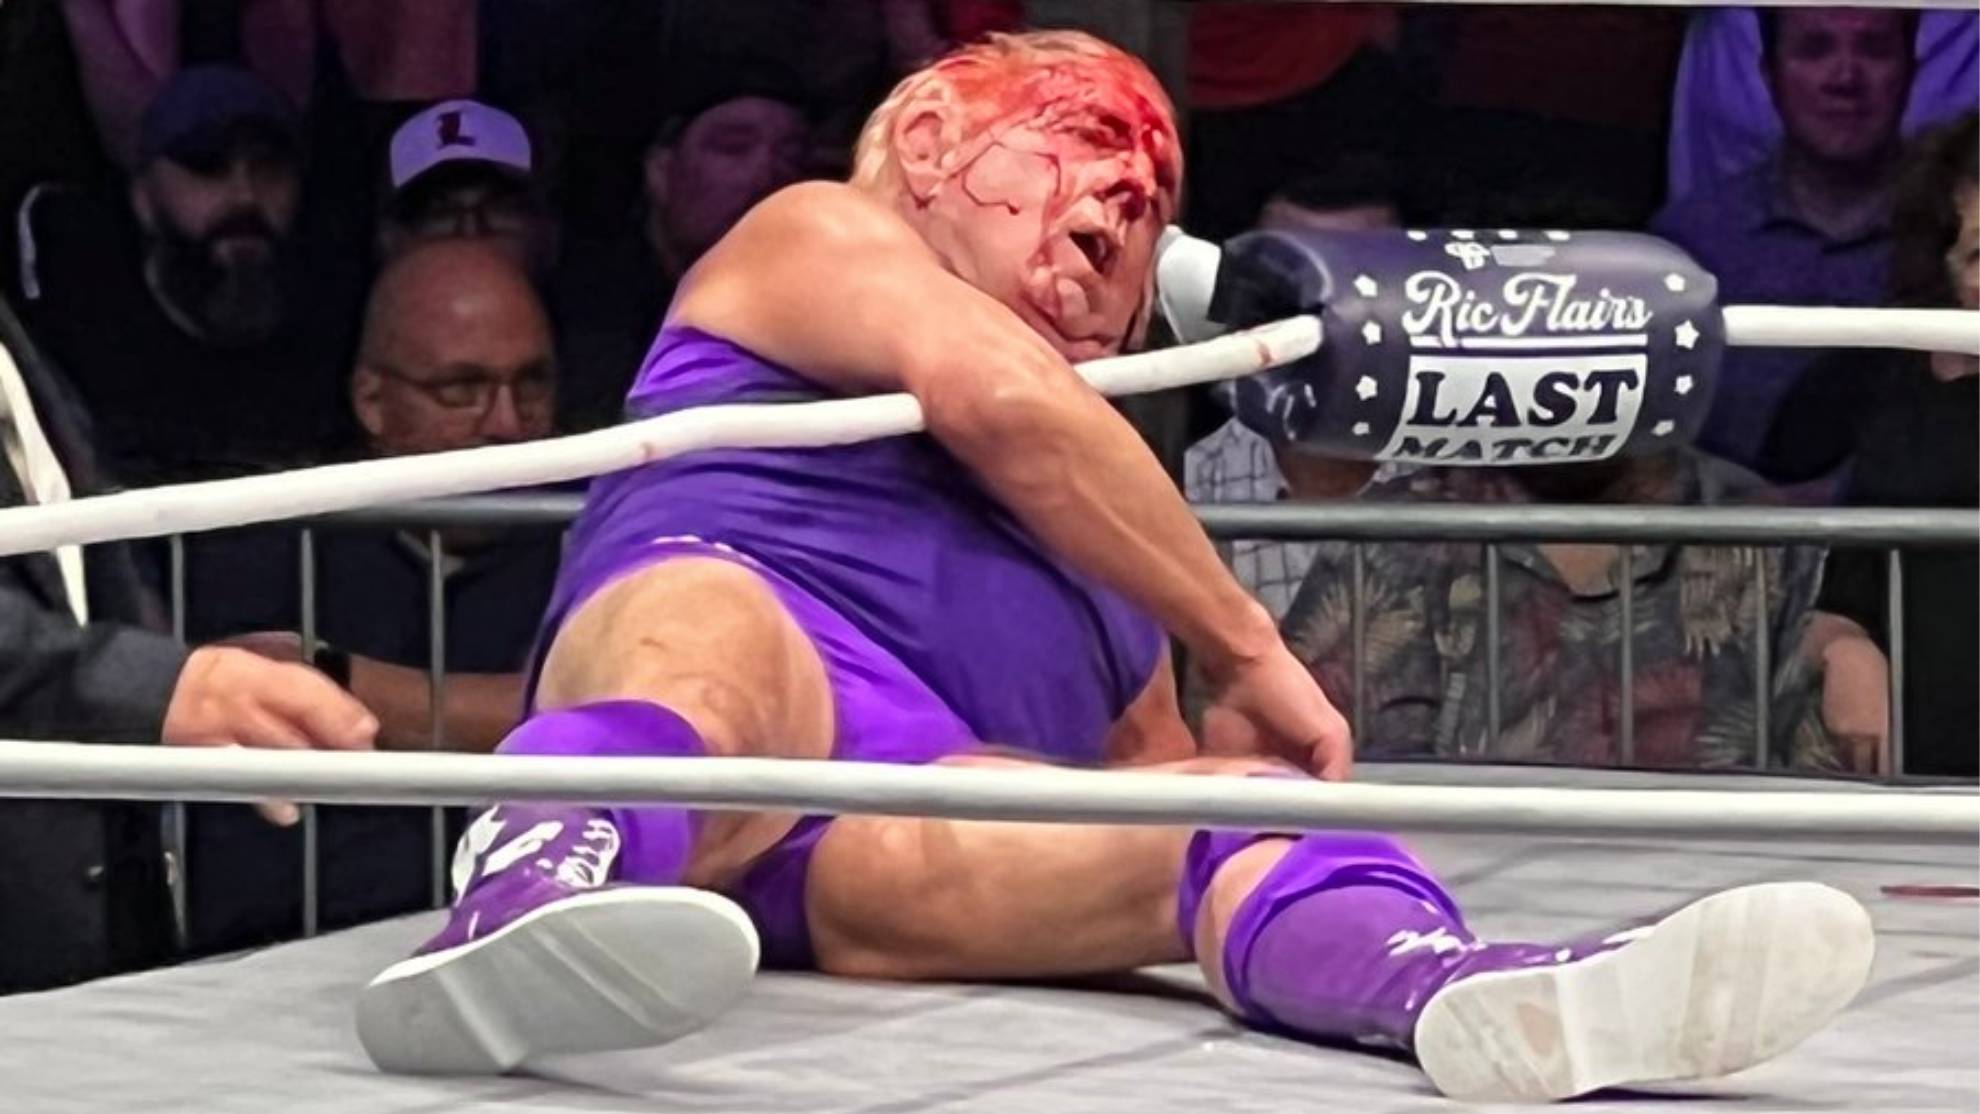 Ric Flair luchando por última vez en el ring/JIM CROCKETT PROMOTIONS